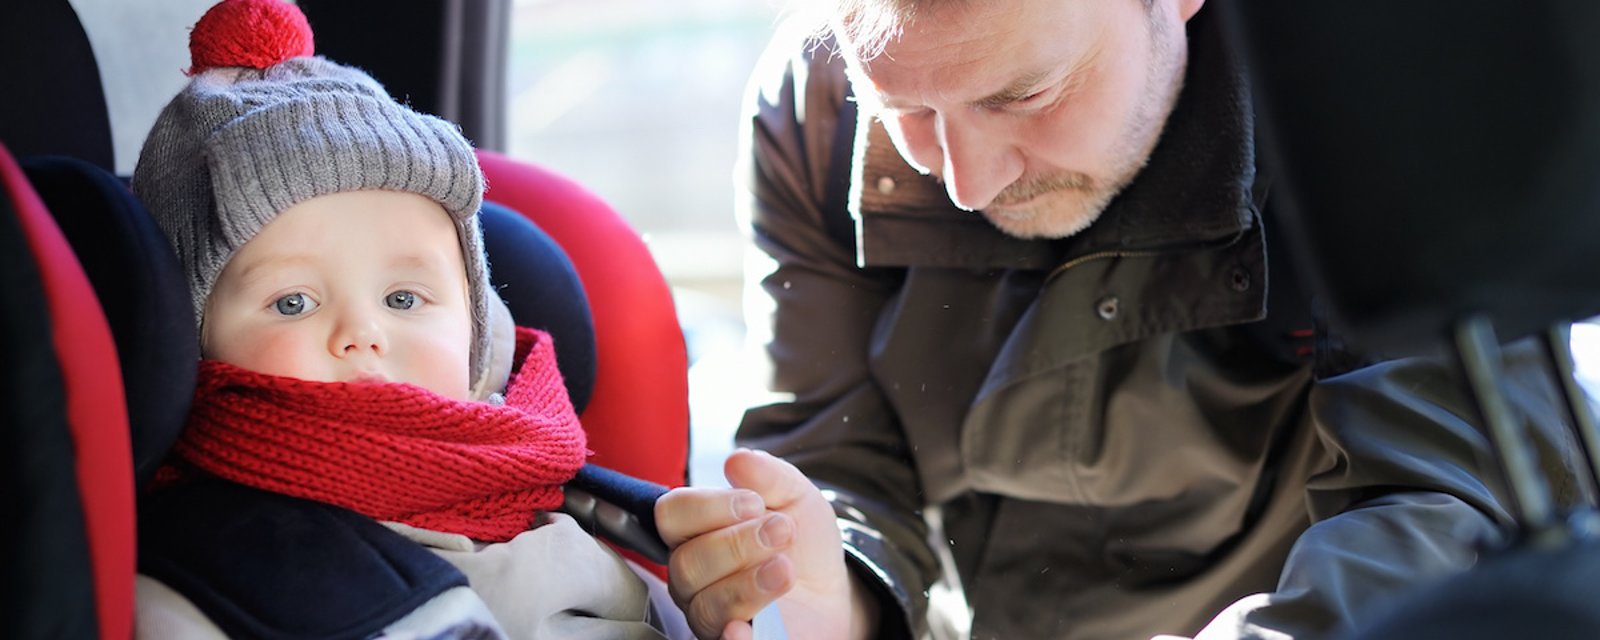 Mise en garde aux parents: attacher un jeune enfant qui porte un gros manteau dans un siège d’auto est dangereux